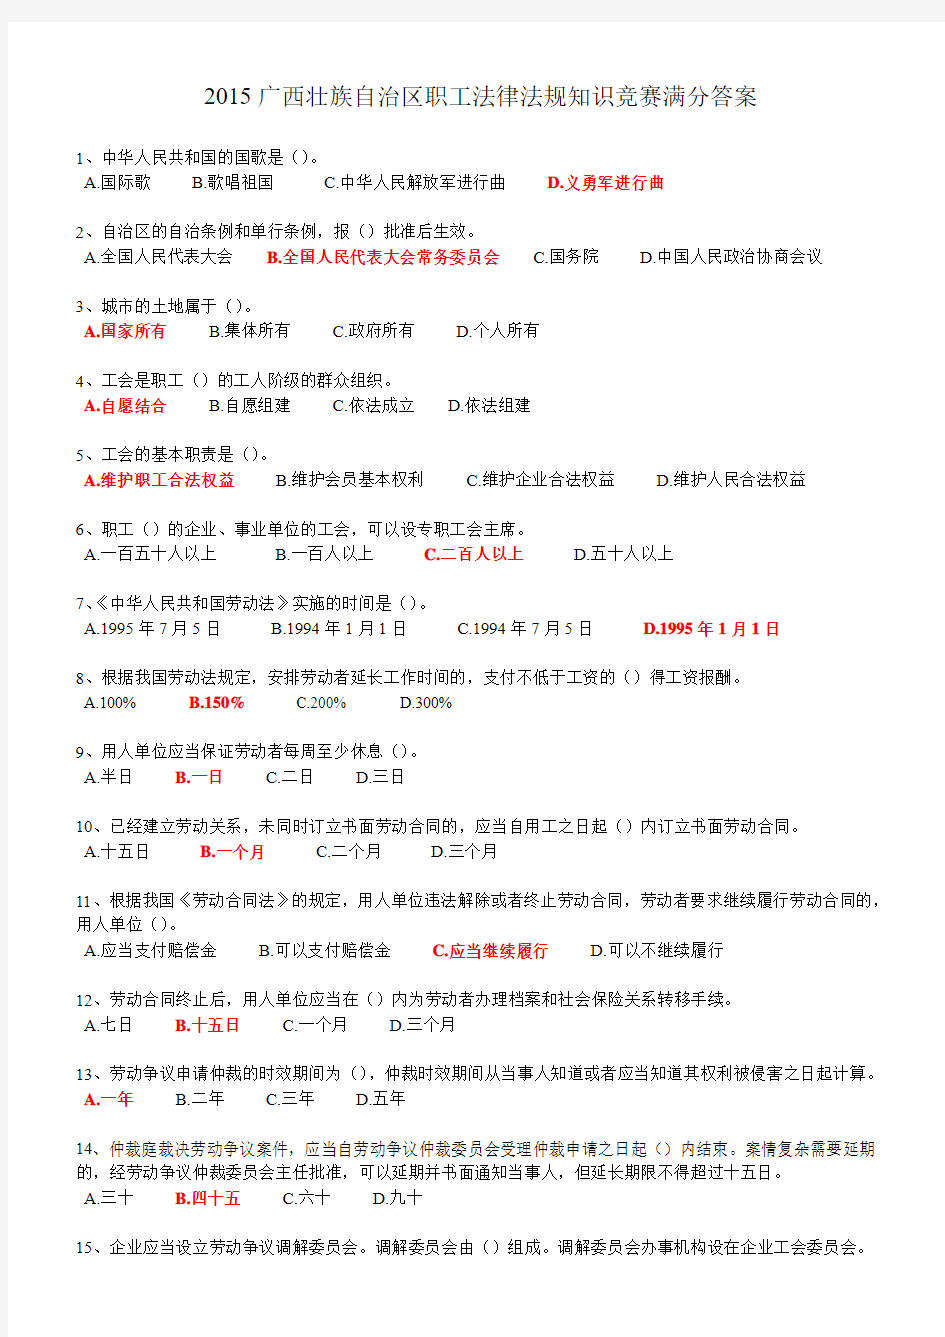 2015广西壮族自治区职工法律法规知识竞赛满分答案